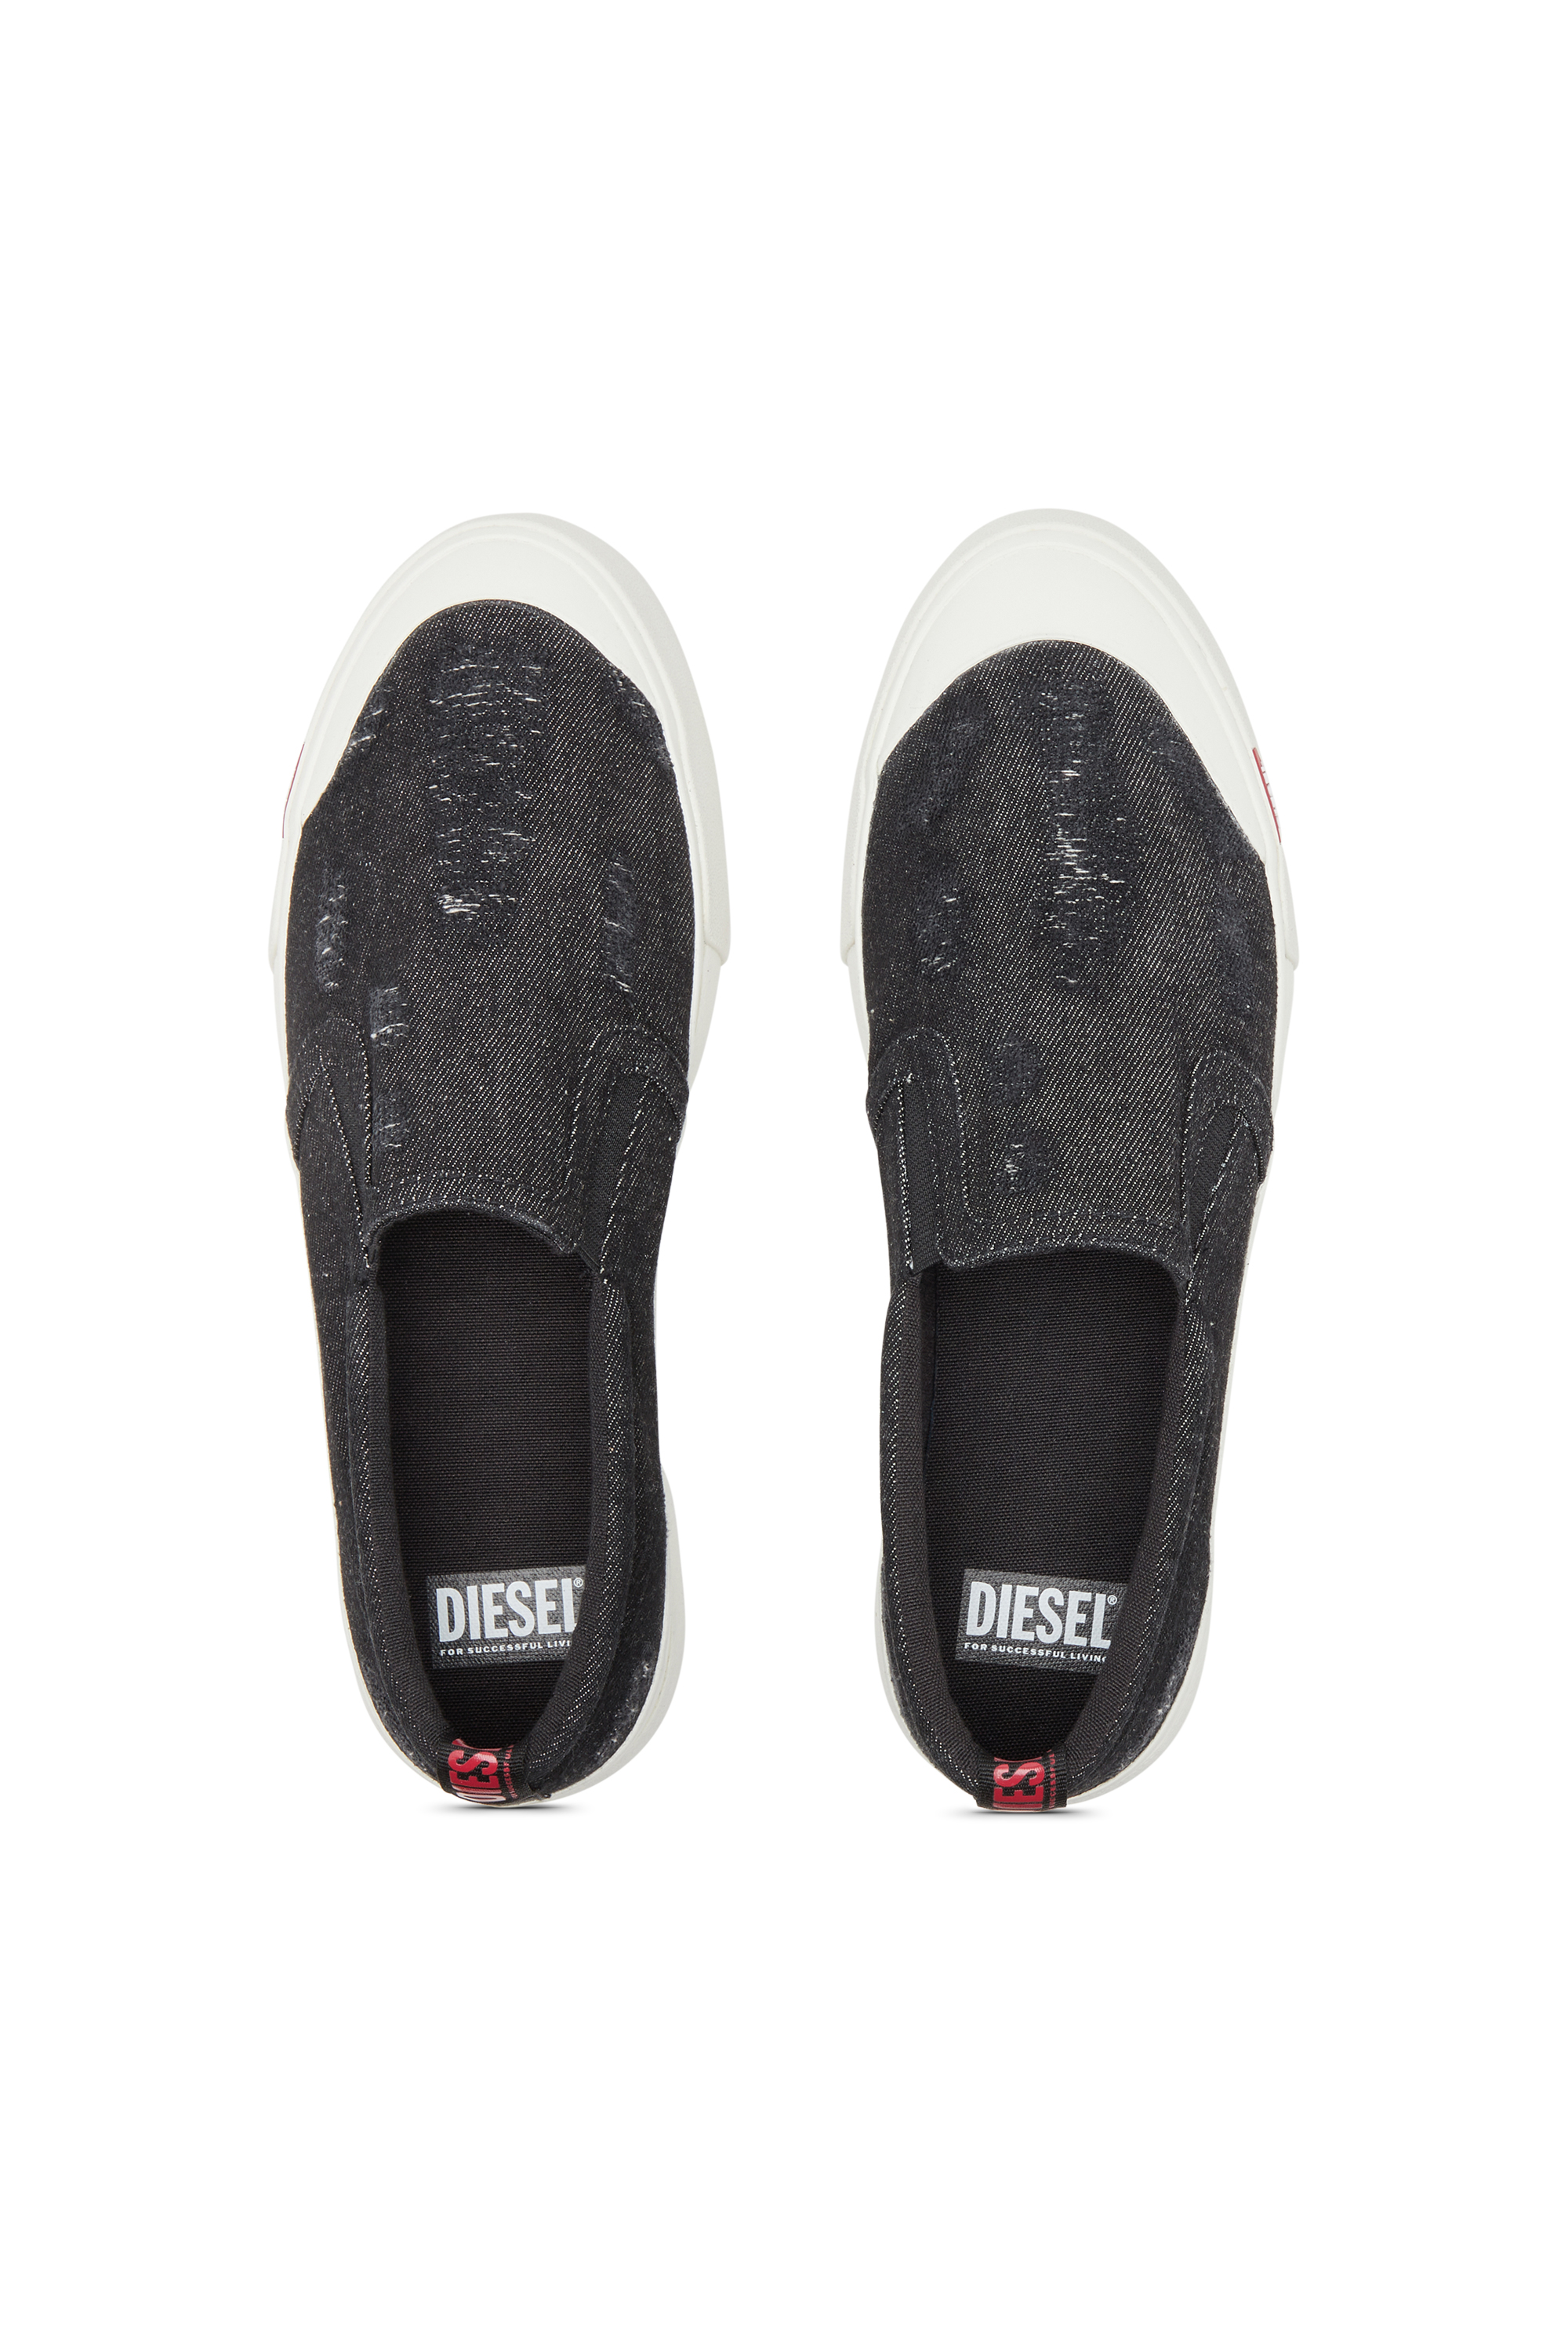 Diesel - S-ATHOS SLIP ON, Man S-Athos Slip On-Slip-on sneakers in distressed denim in Black - Image 5